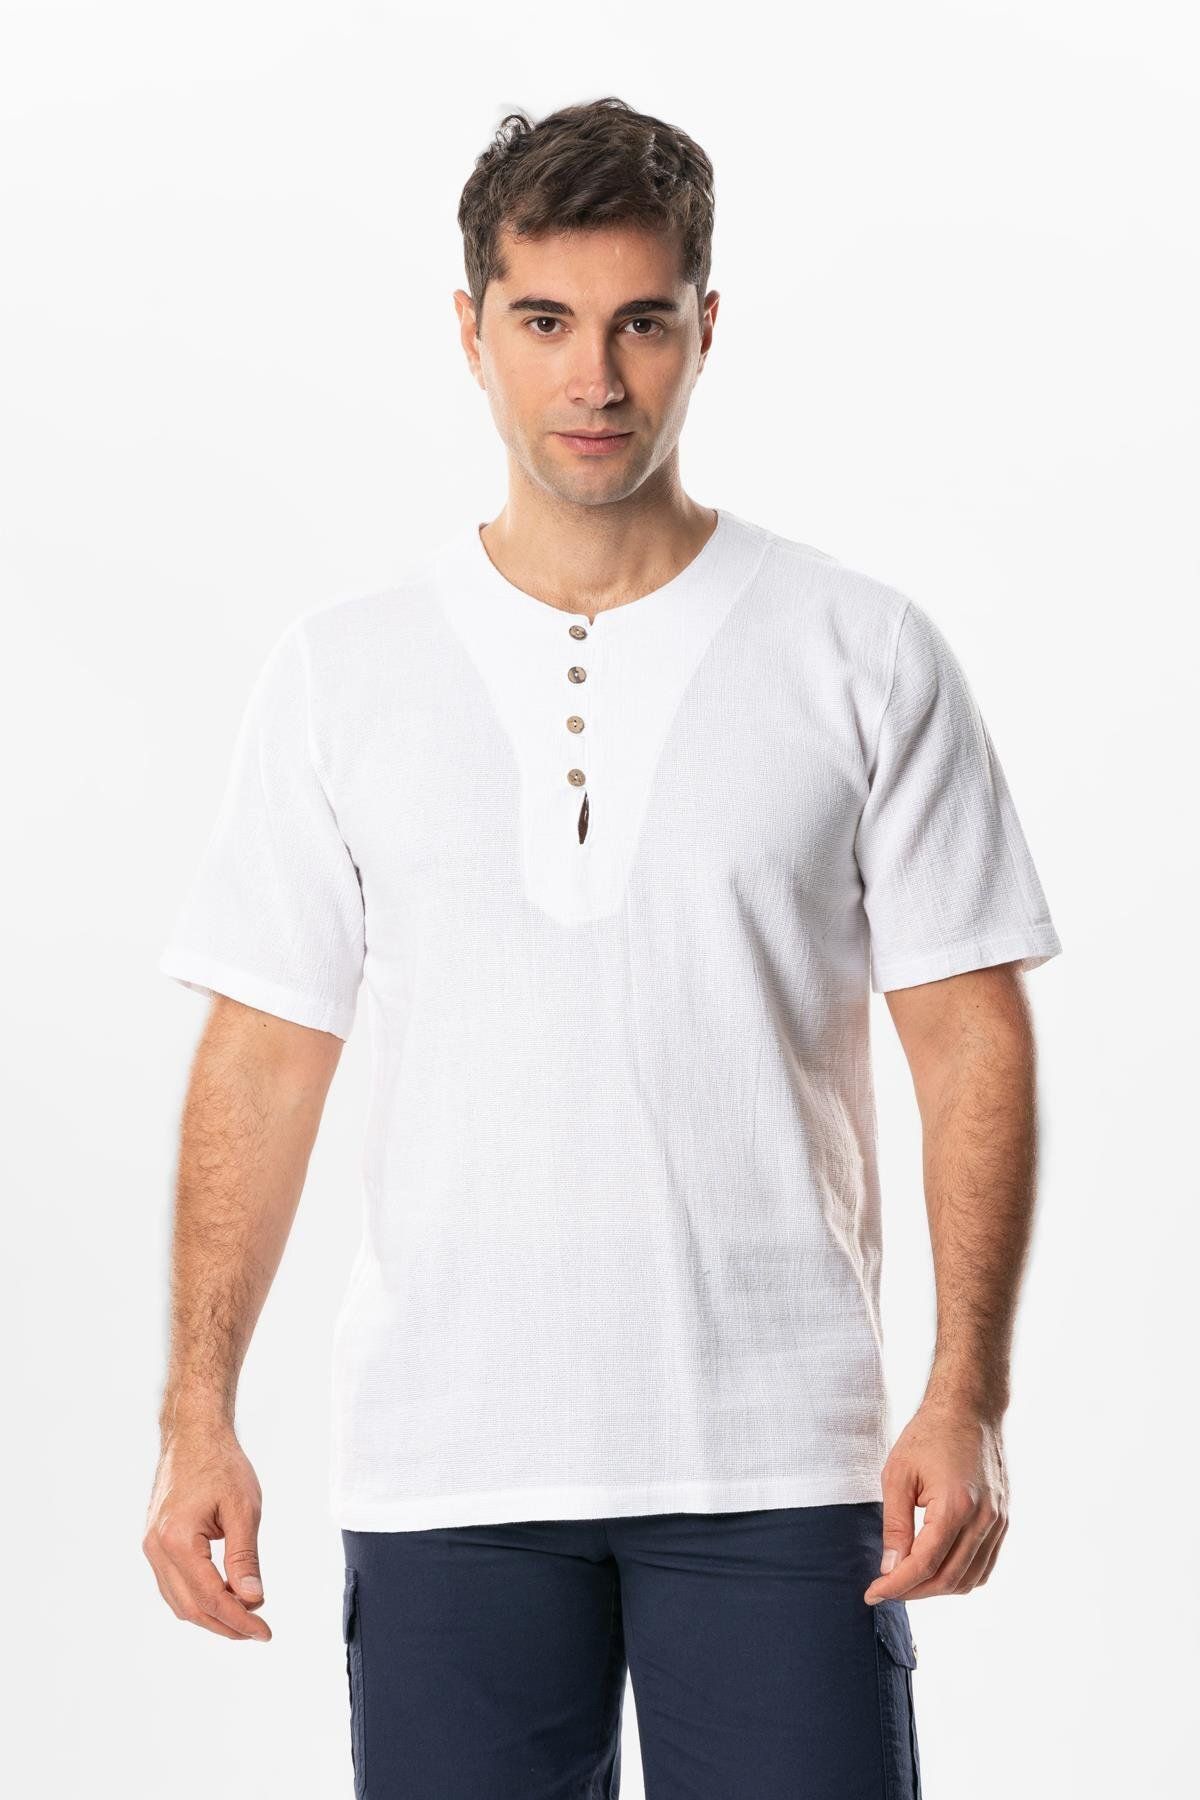 Eliş Şile Bezi Halikarnas Kısa Kol Violet Düğme Detaylı Erkek Yazlık Tshirt Beyaz Byz